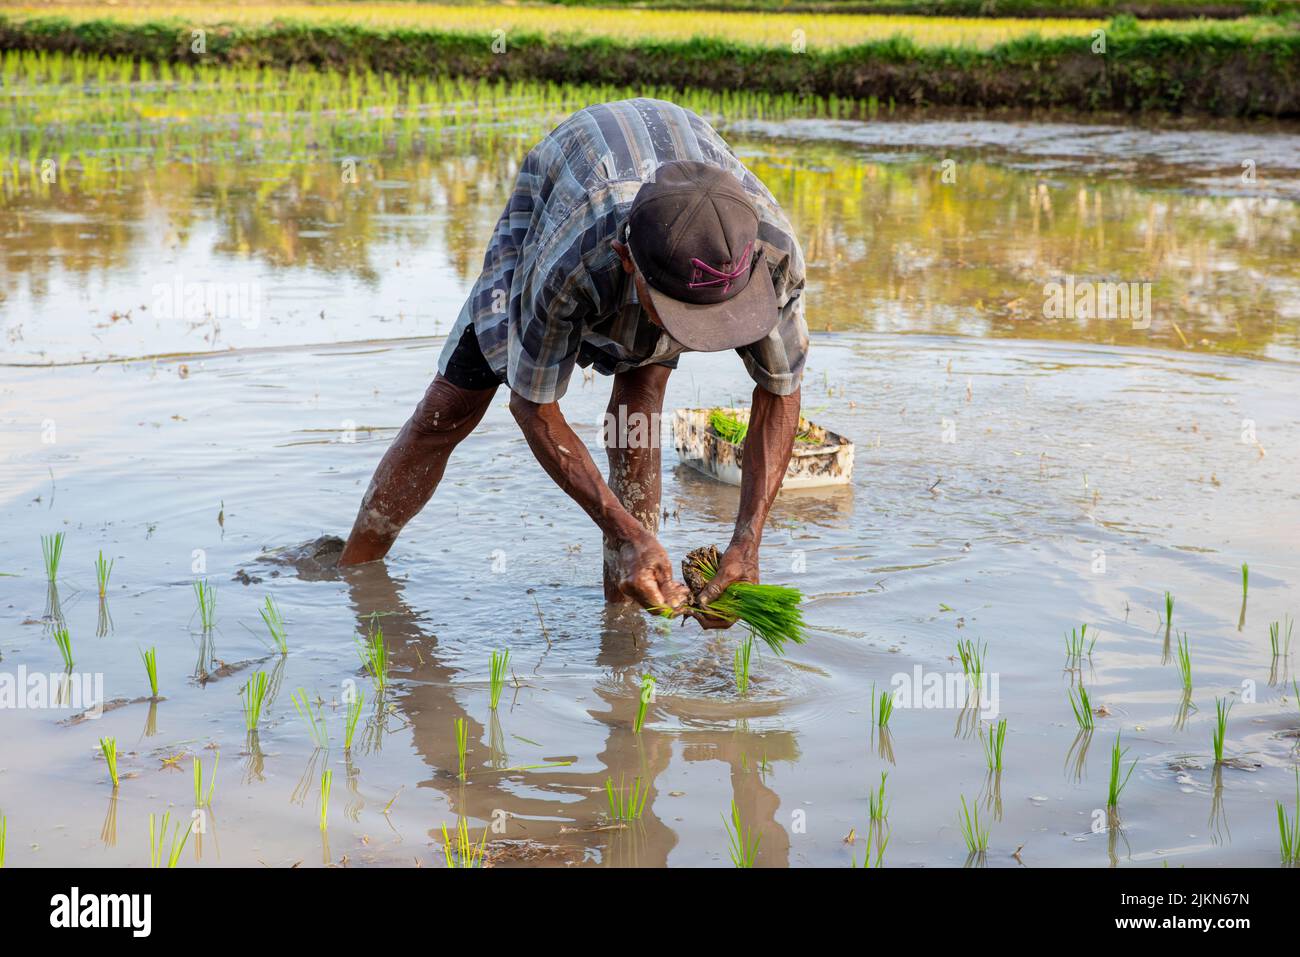 Un hombre del sur de Asia que trabaja en el campo de arroz en Bali, Indonesia Foto de stock